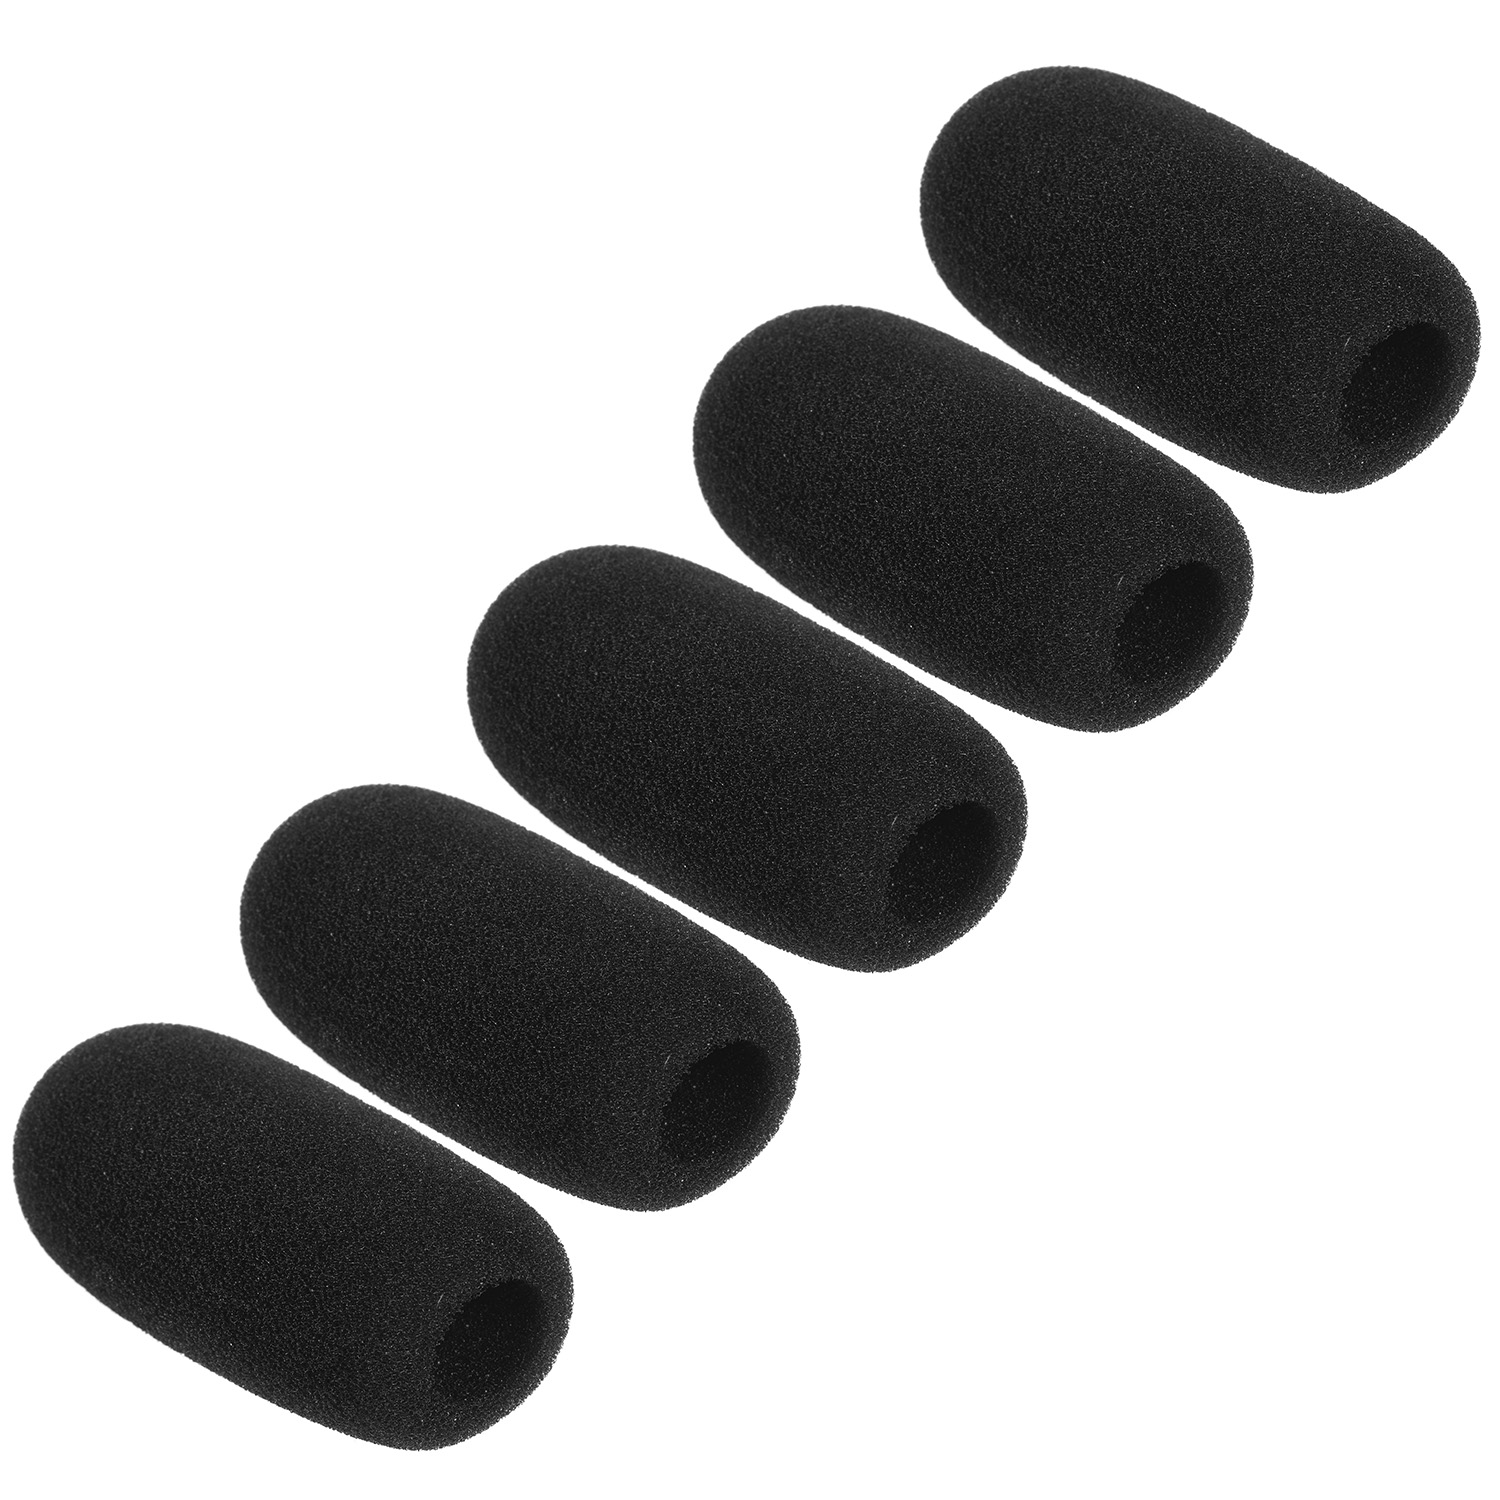 Mini Microfoon Windschermen Mic Foam Covers Voor Revers Lavalier Headset Microfoon Zwart, Pack Van 5 Stuks